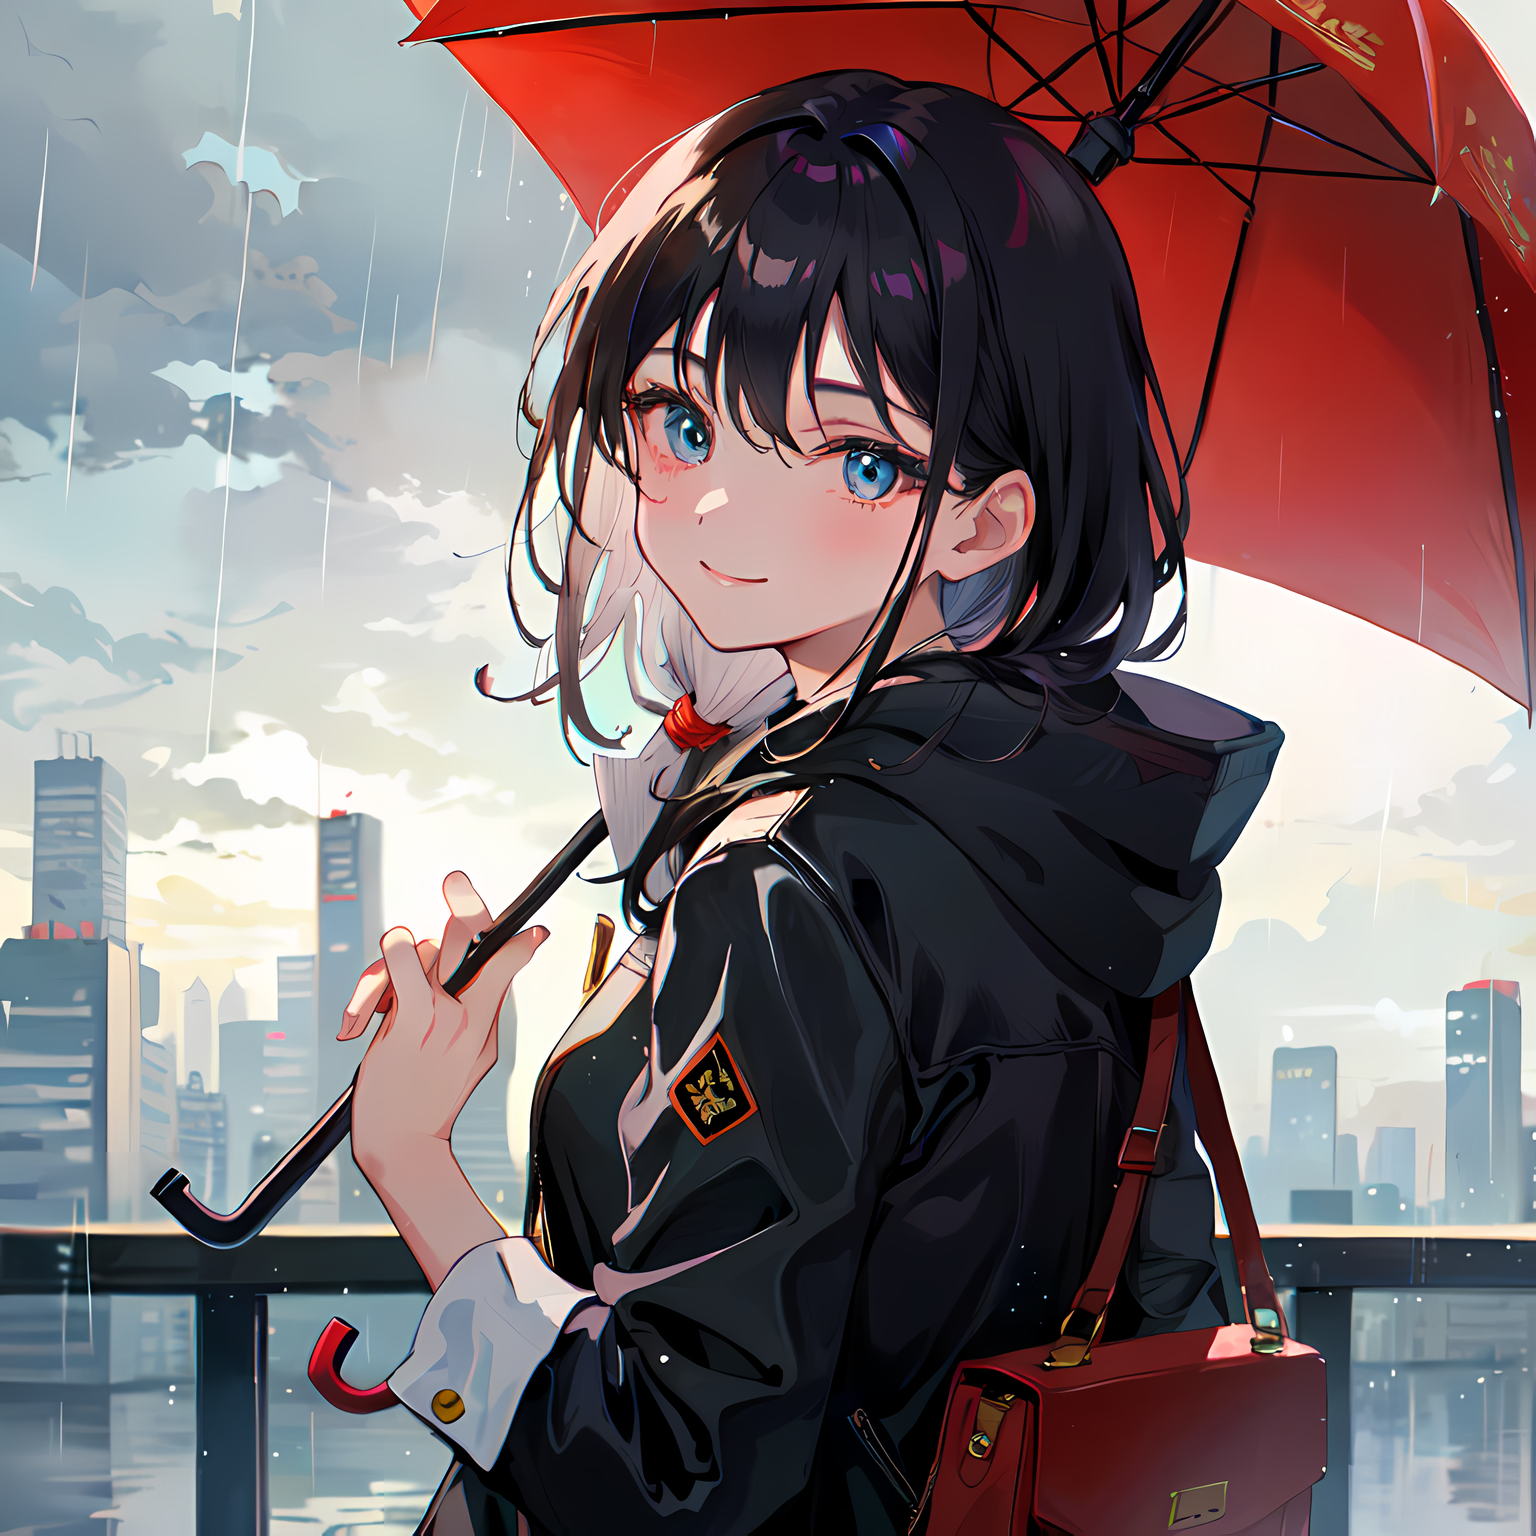 共享的雨伞下，她微笑着望向大厦和桥梁。插画图片壁纸